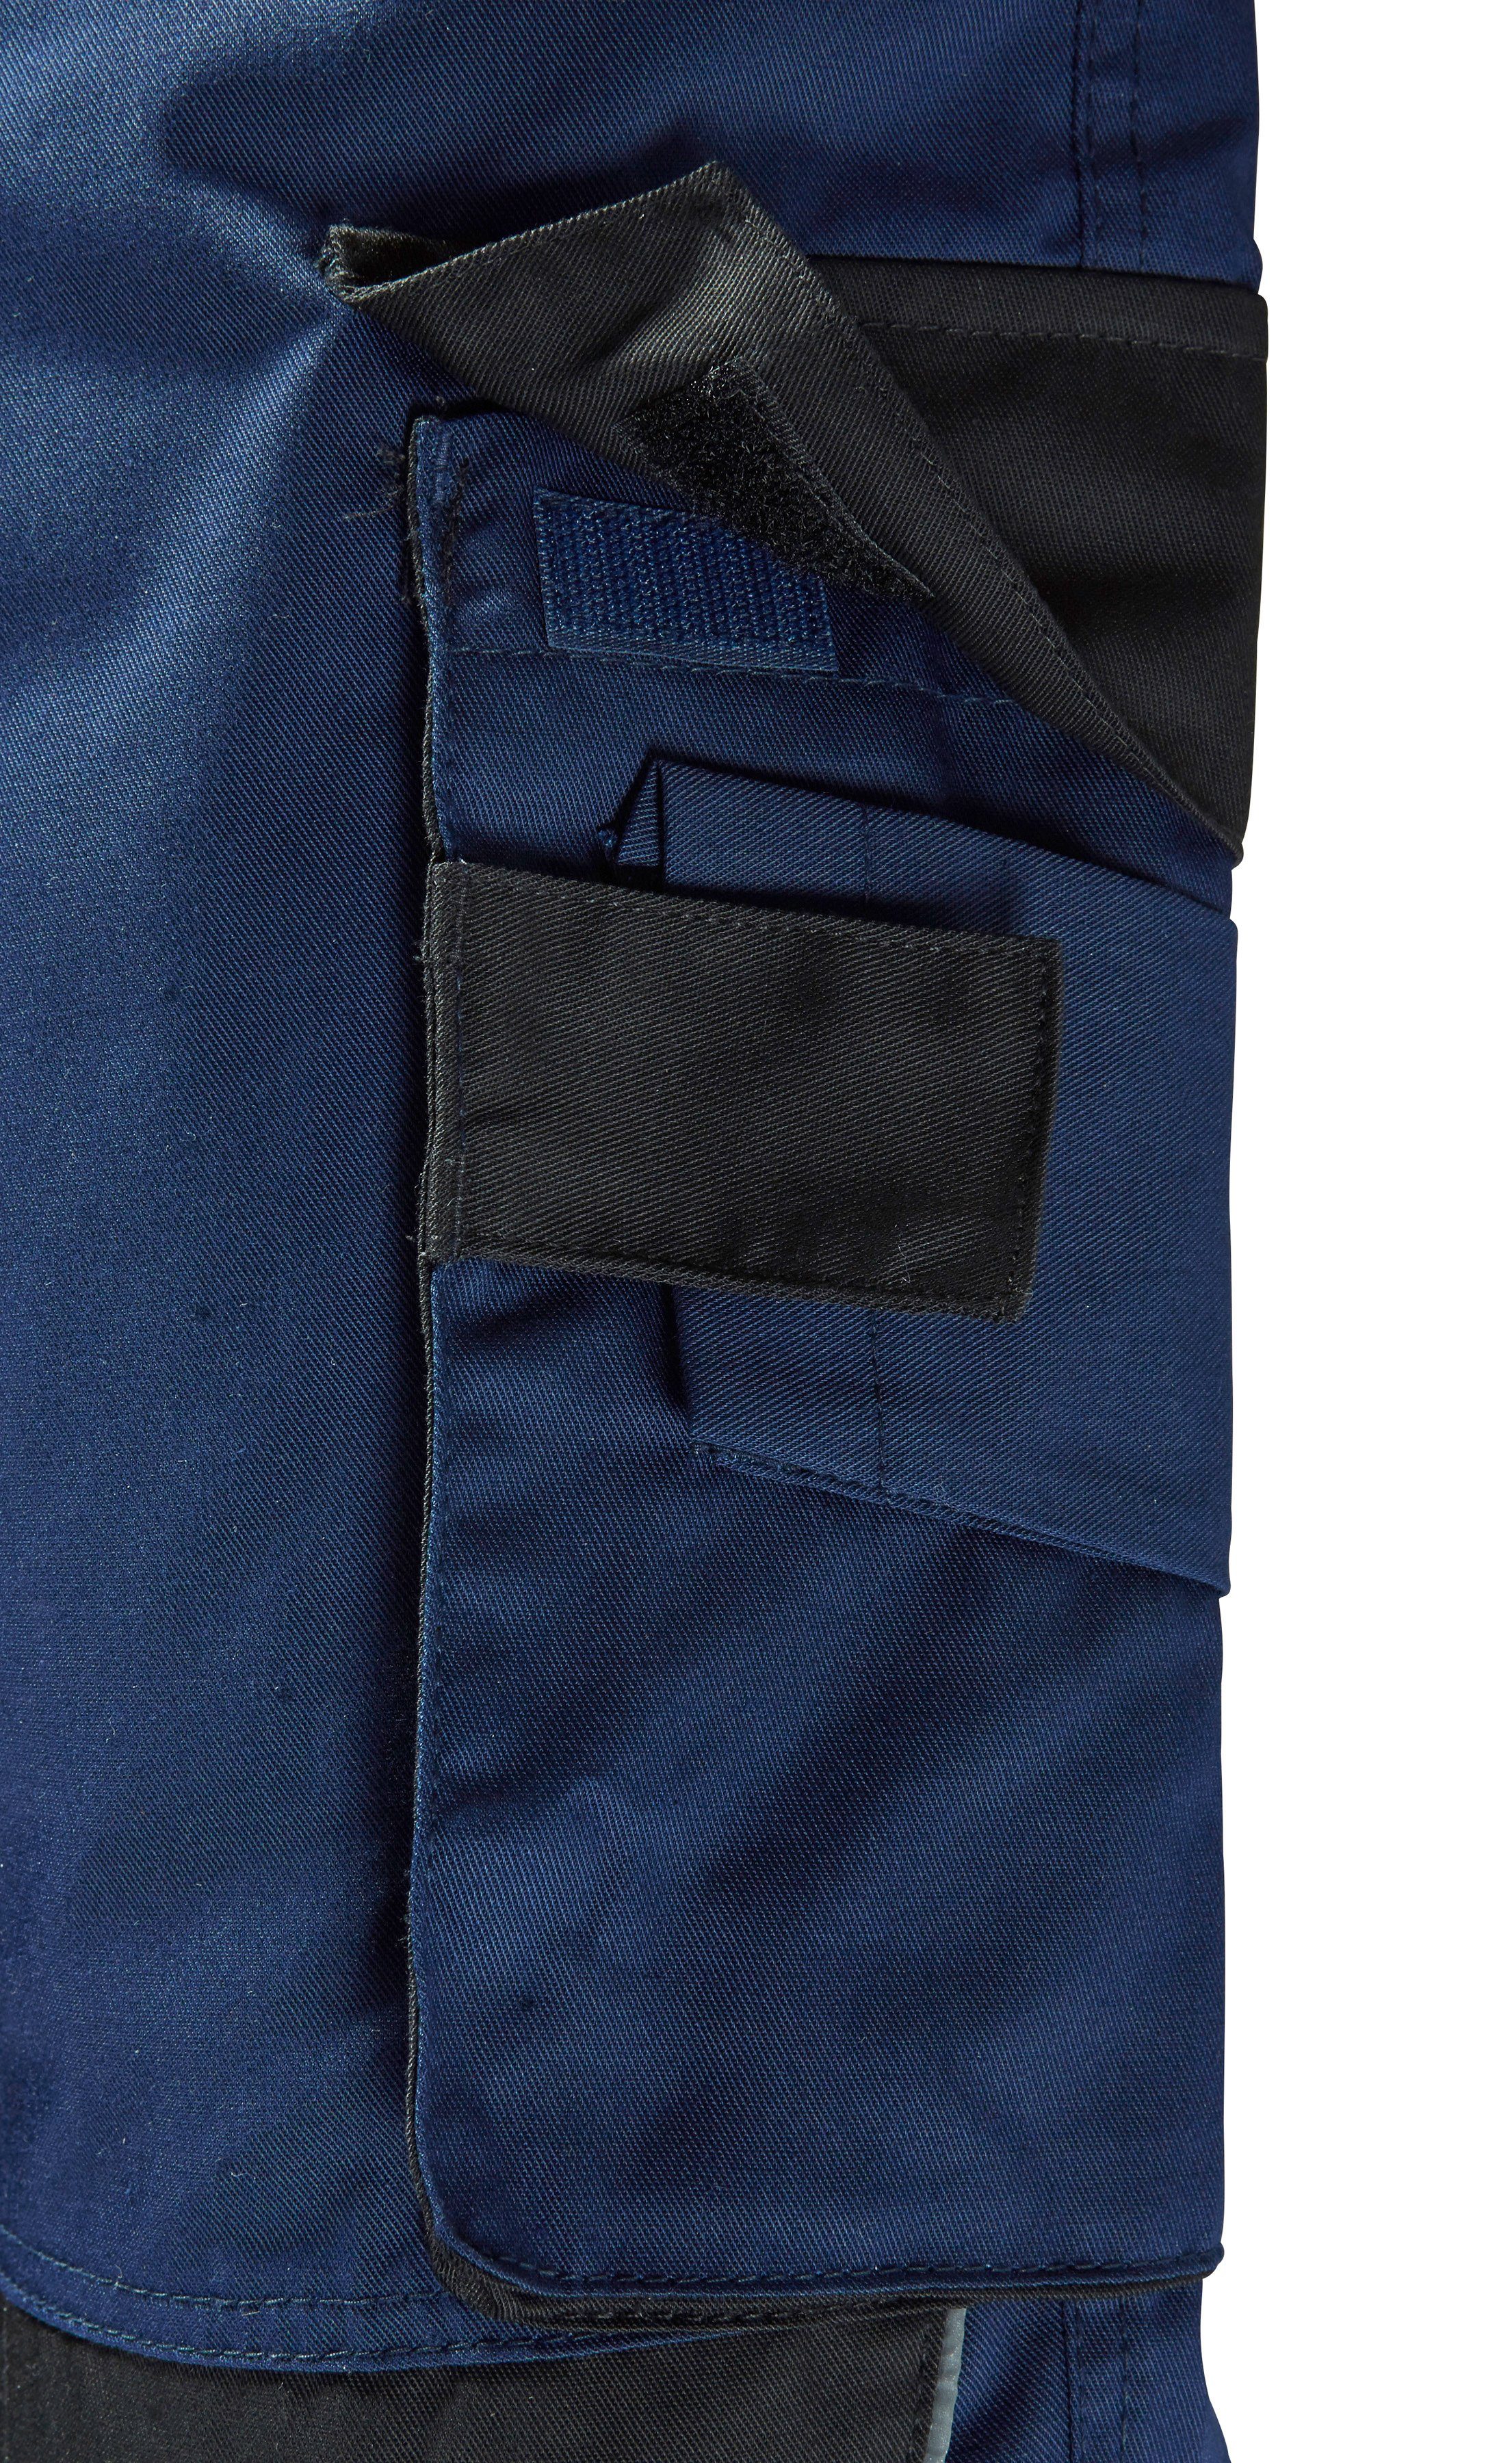 safety& more Latzhose mit blau-schwarz Pull Reflexeinsätzen